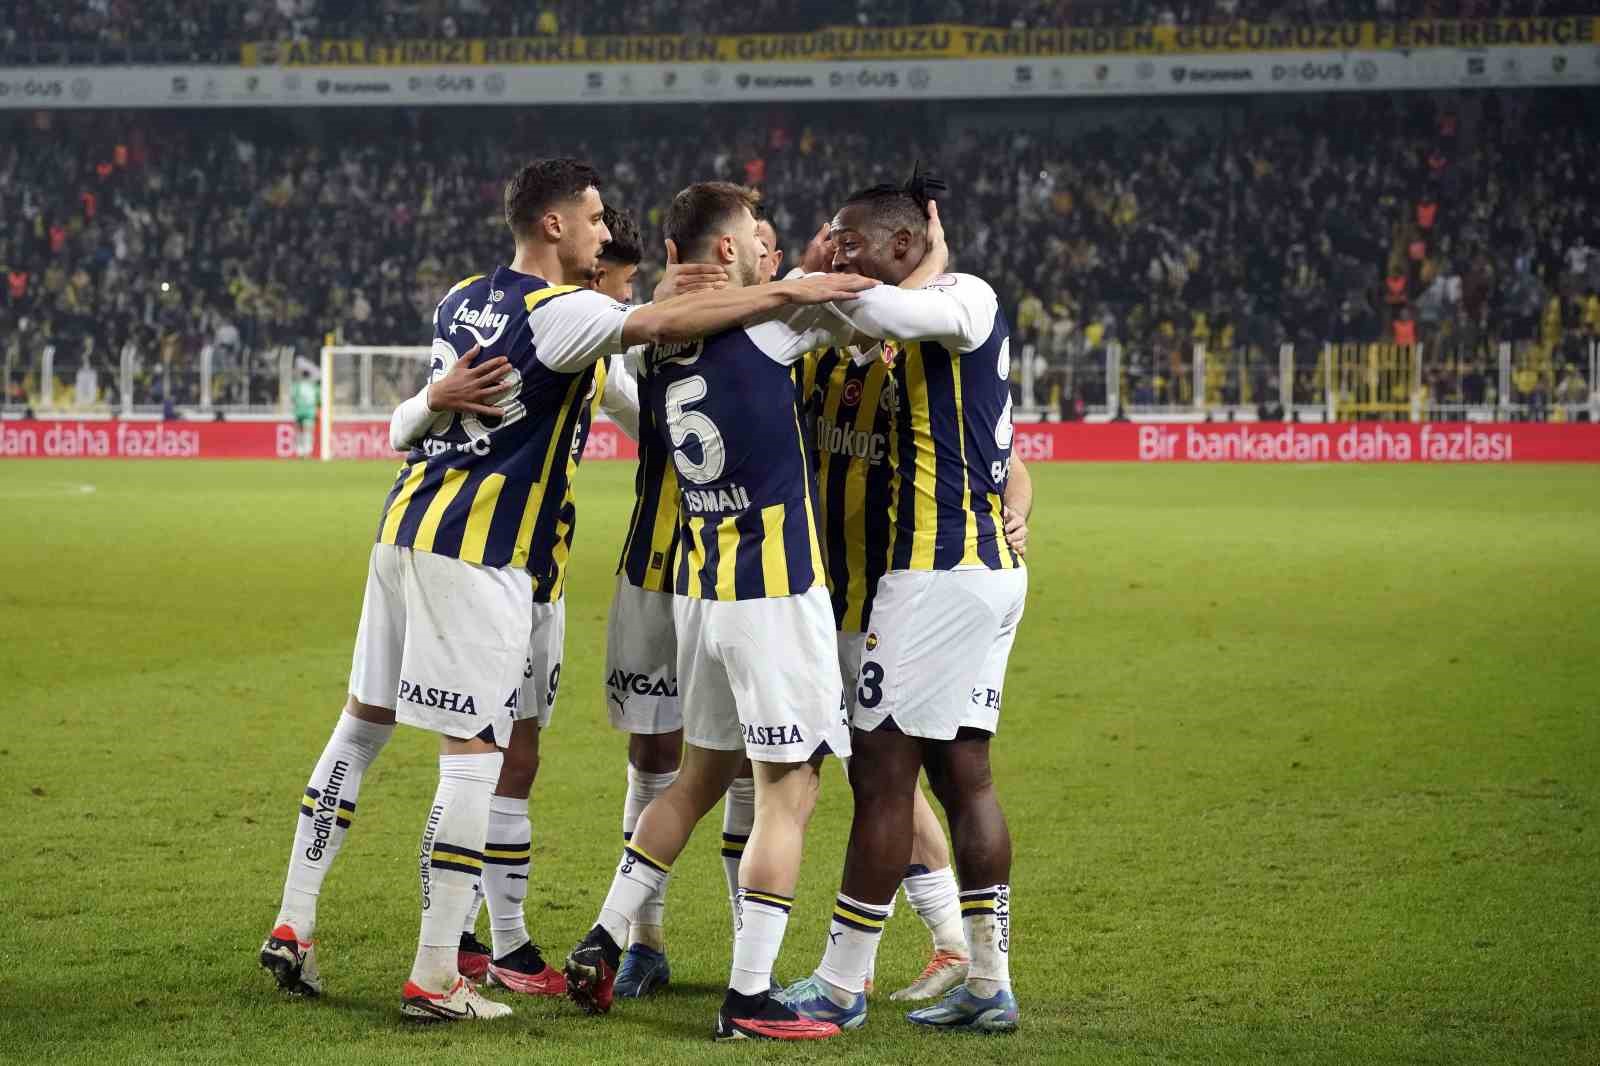 Fenerbahçe, Ziraat Türkiye Kupası’nda Adanaspor’u 6-0 mağlup ettiği karşılaşmada galip geldi.